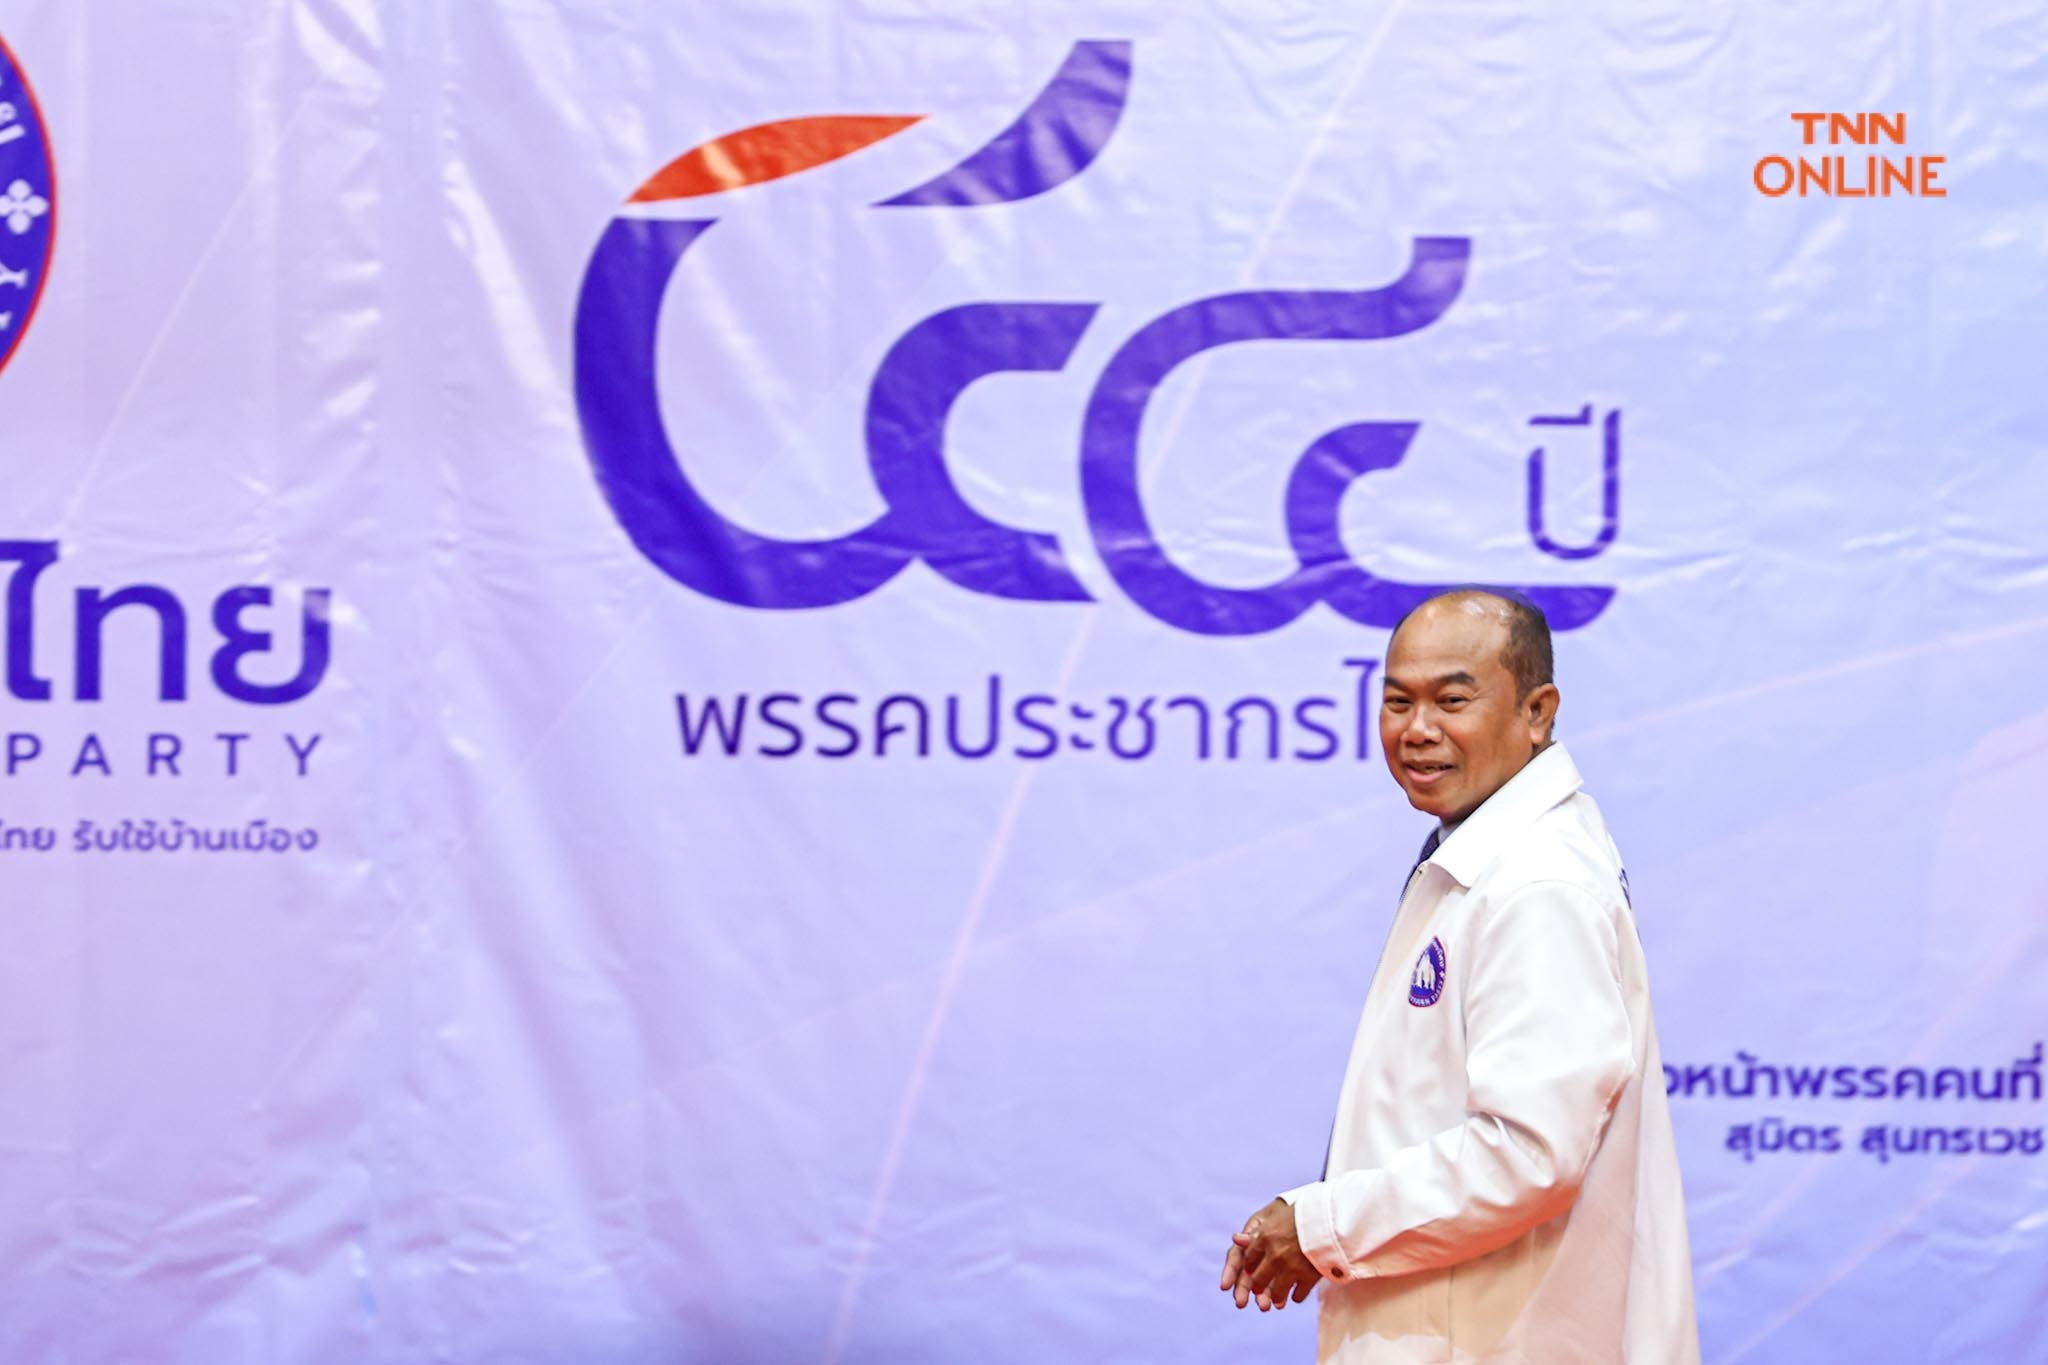 พรรคประชากรไทย เปิดตัว “ครูปรีชา” ว่าที่ผู้สมัคร ส.ส. พร้อมดันนโยบายหวยราคา 80 บาท 